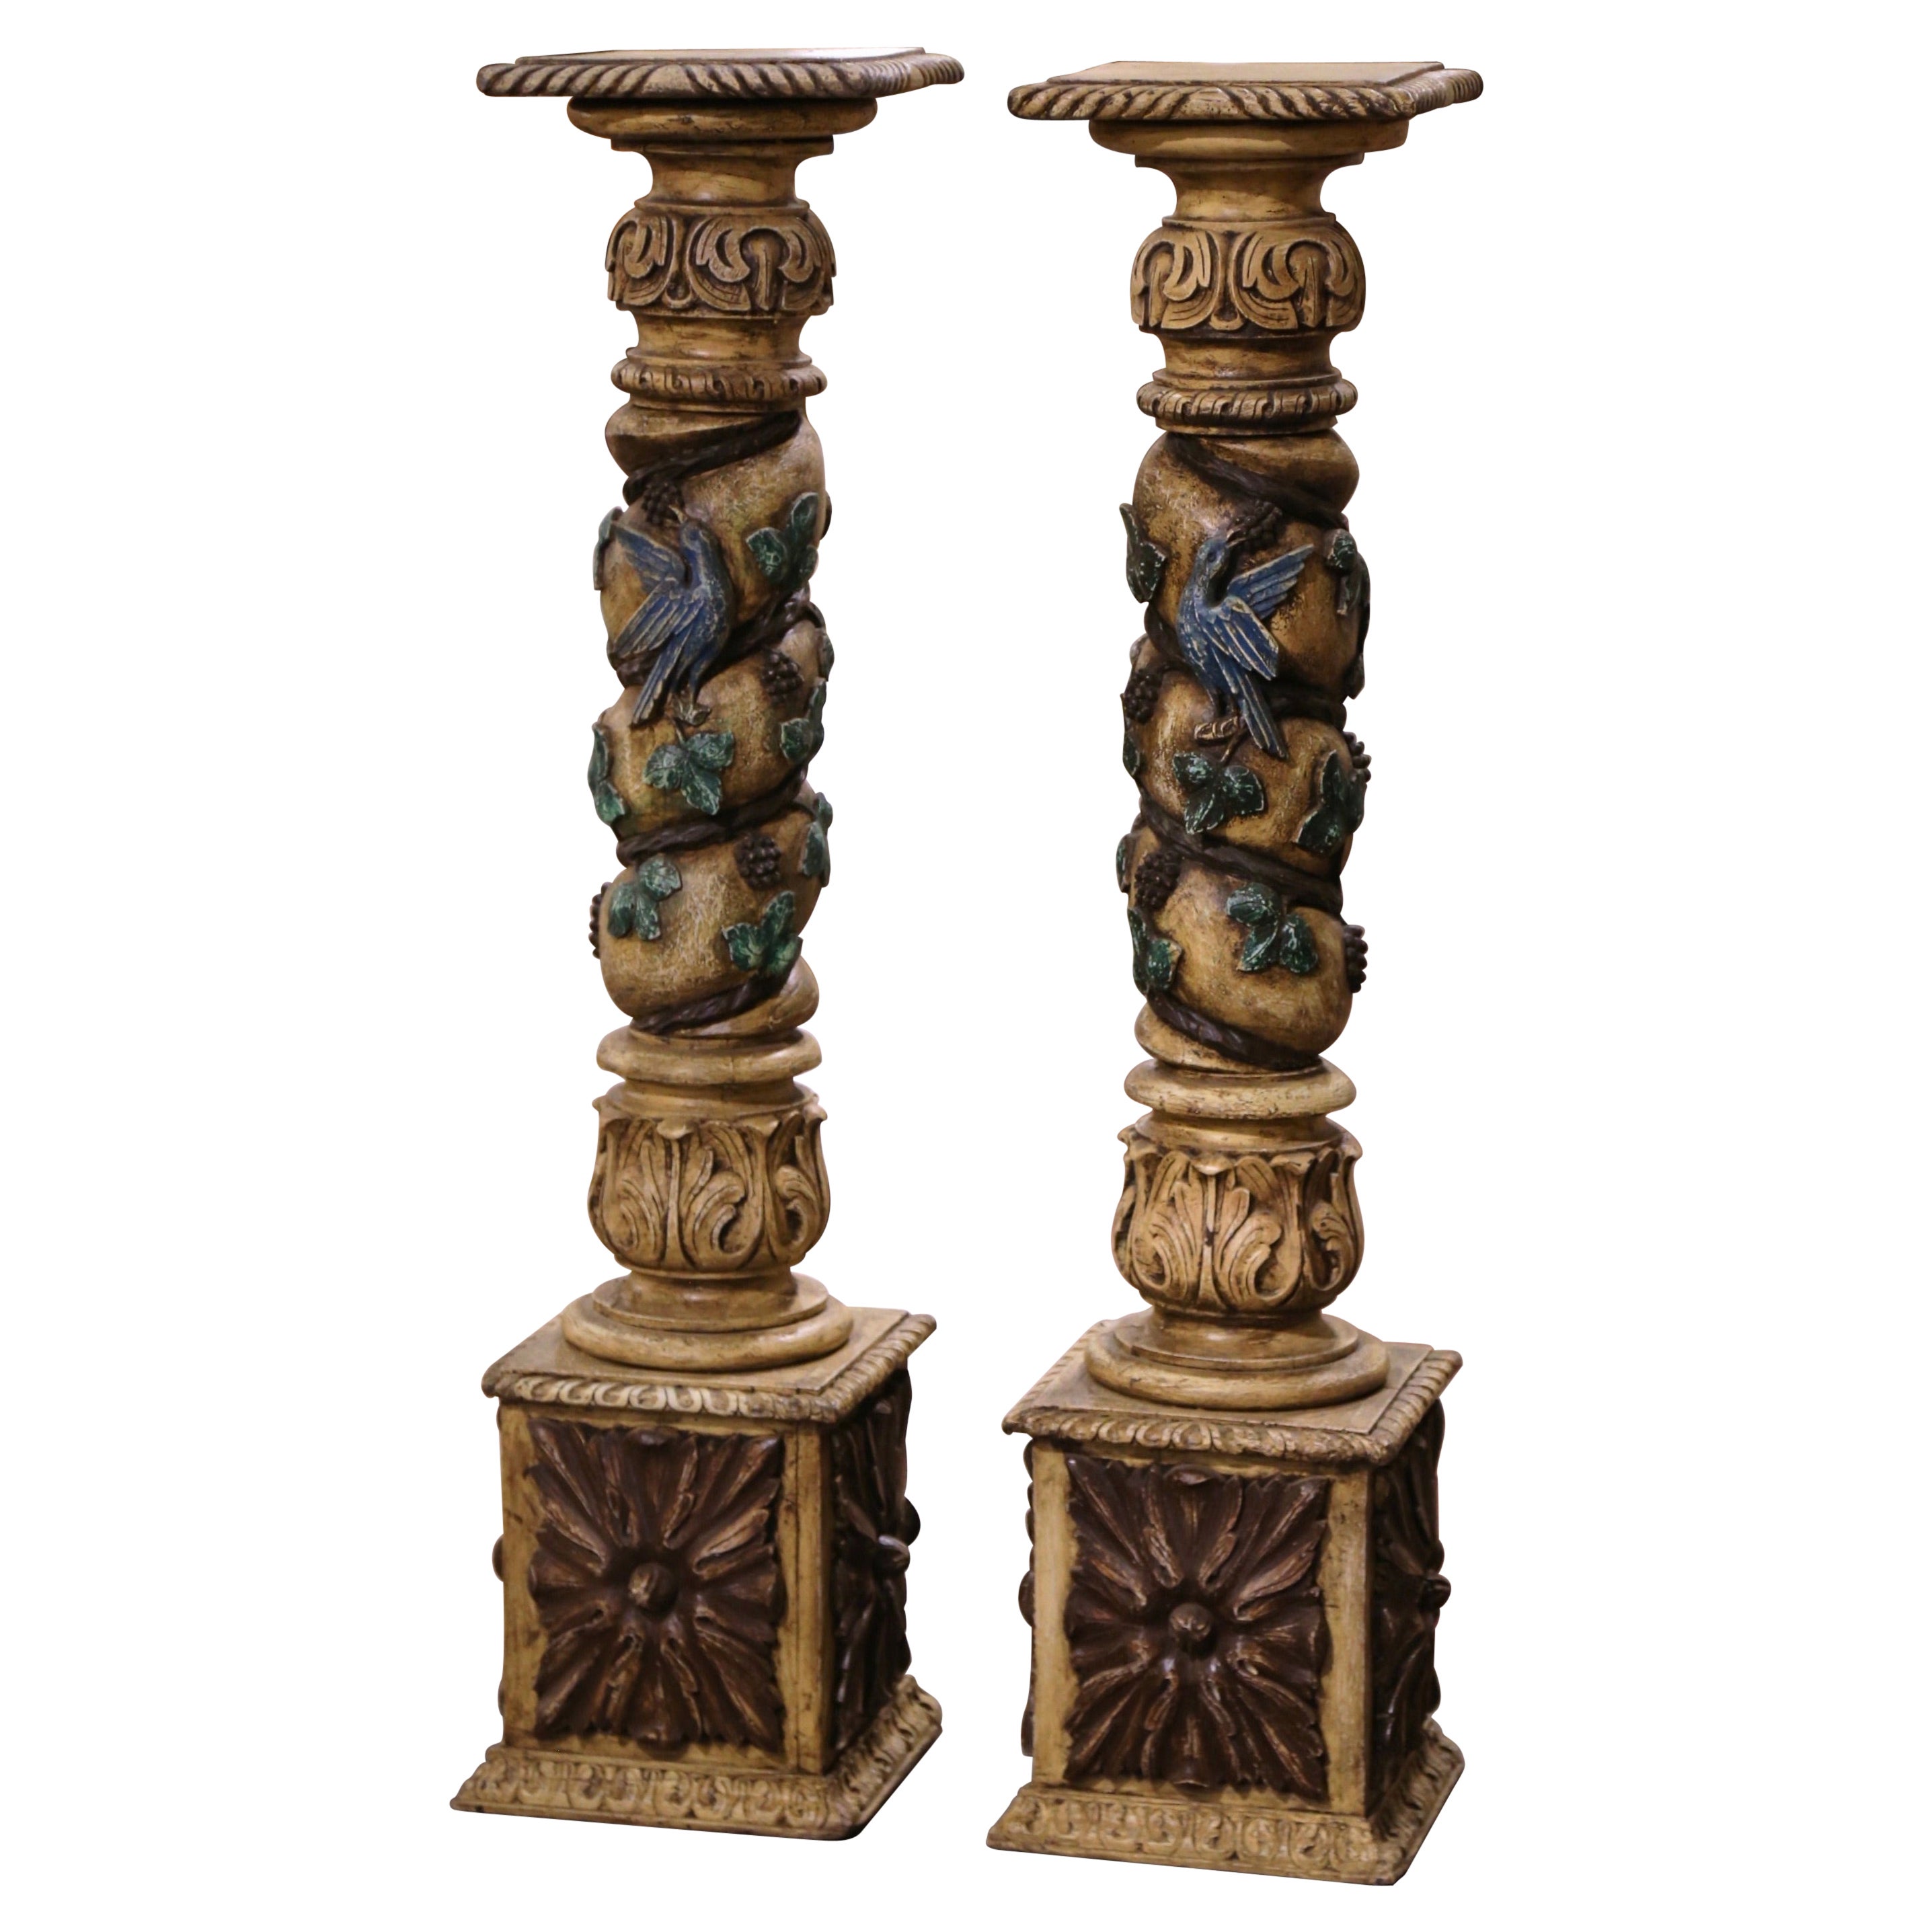 Paar französische geschnitzte polychrome Säulen des 18. Jahrhunderts mit Weinreben, Trauben und Blättern